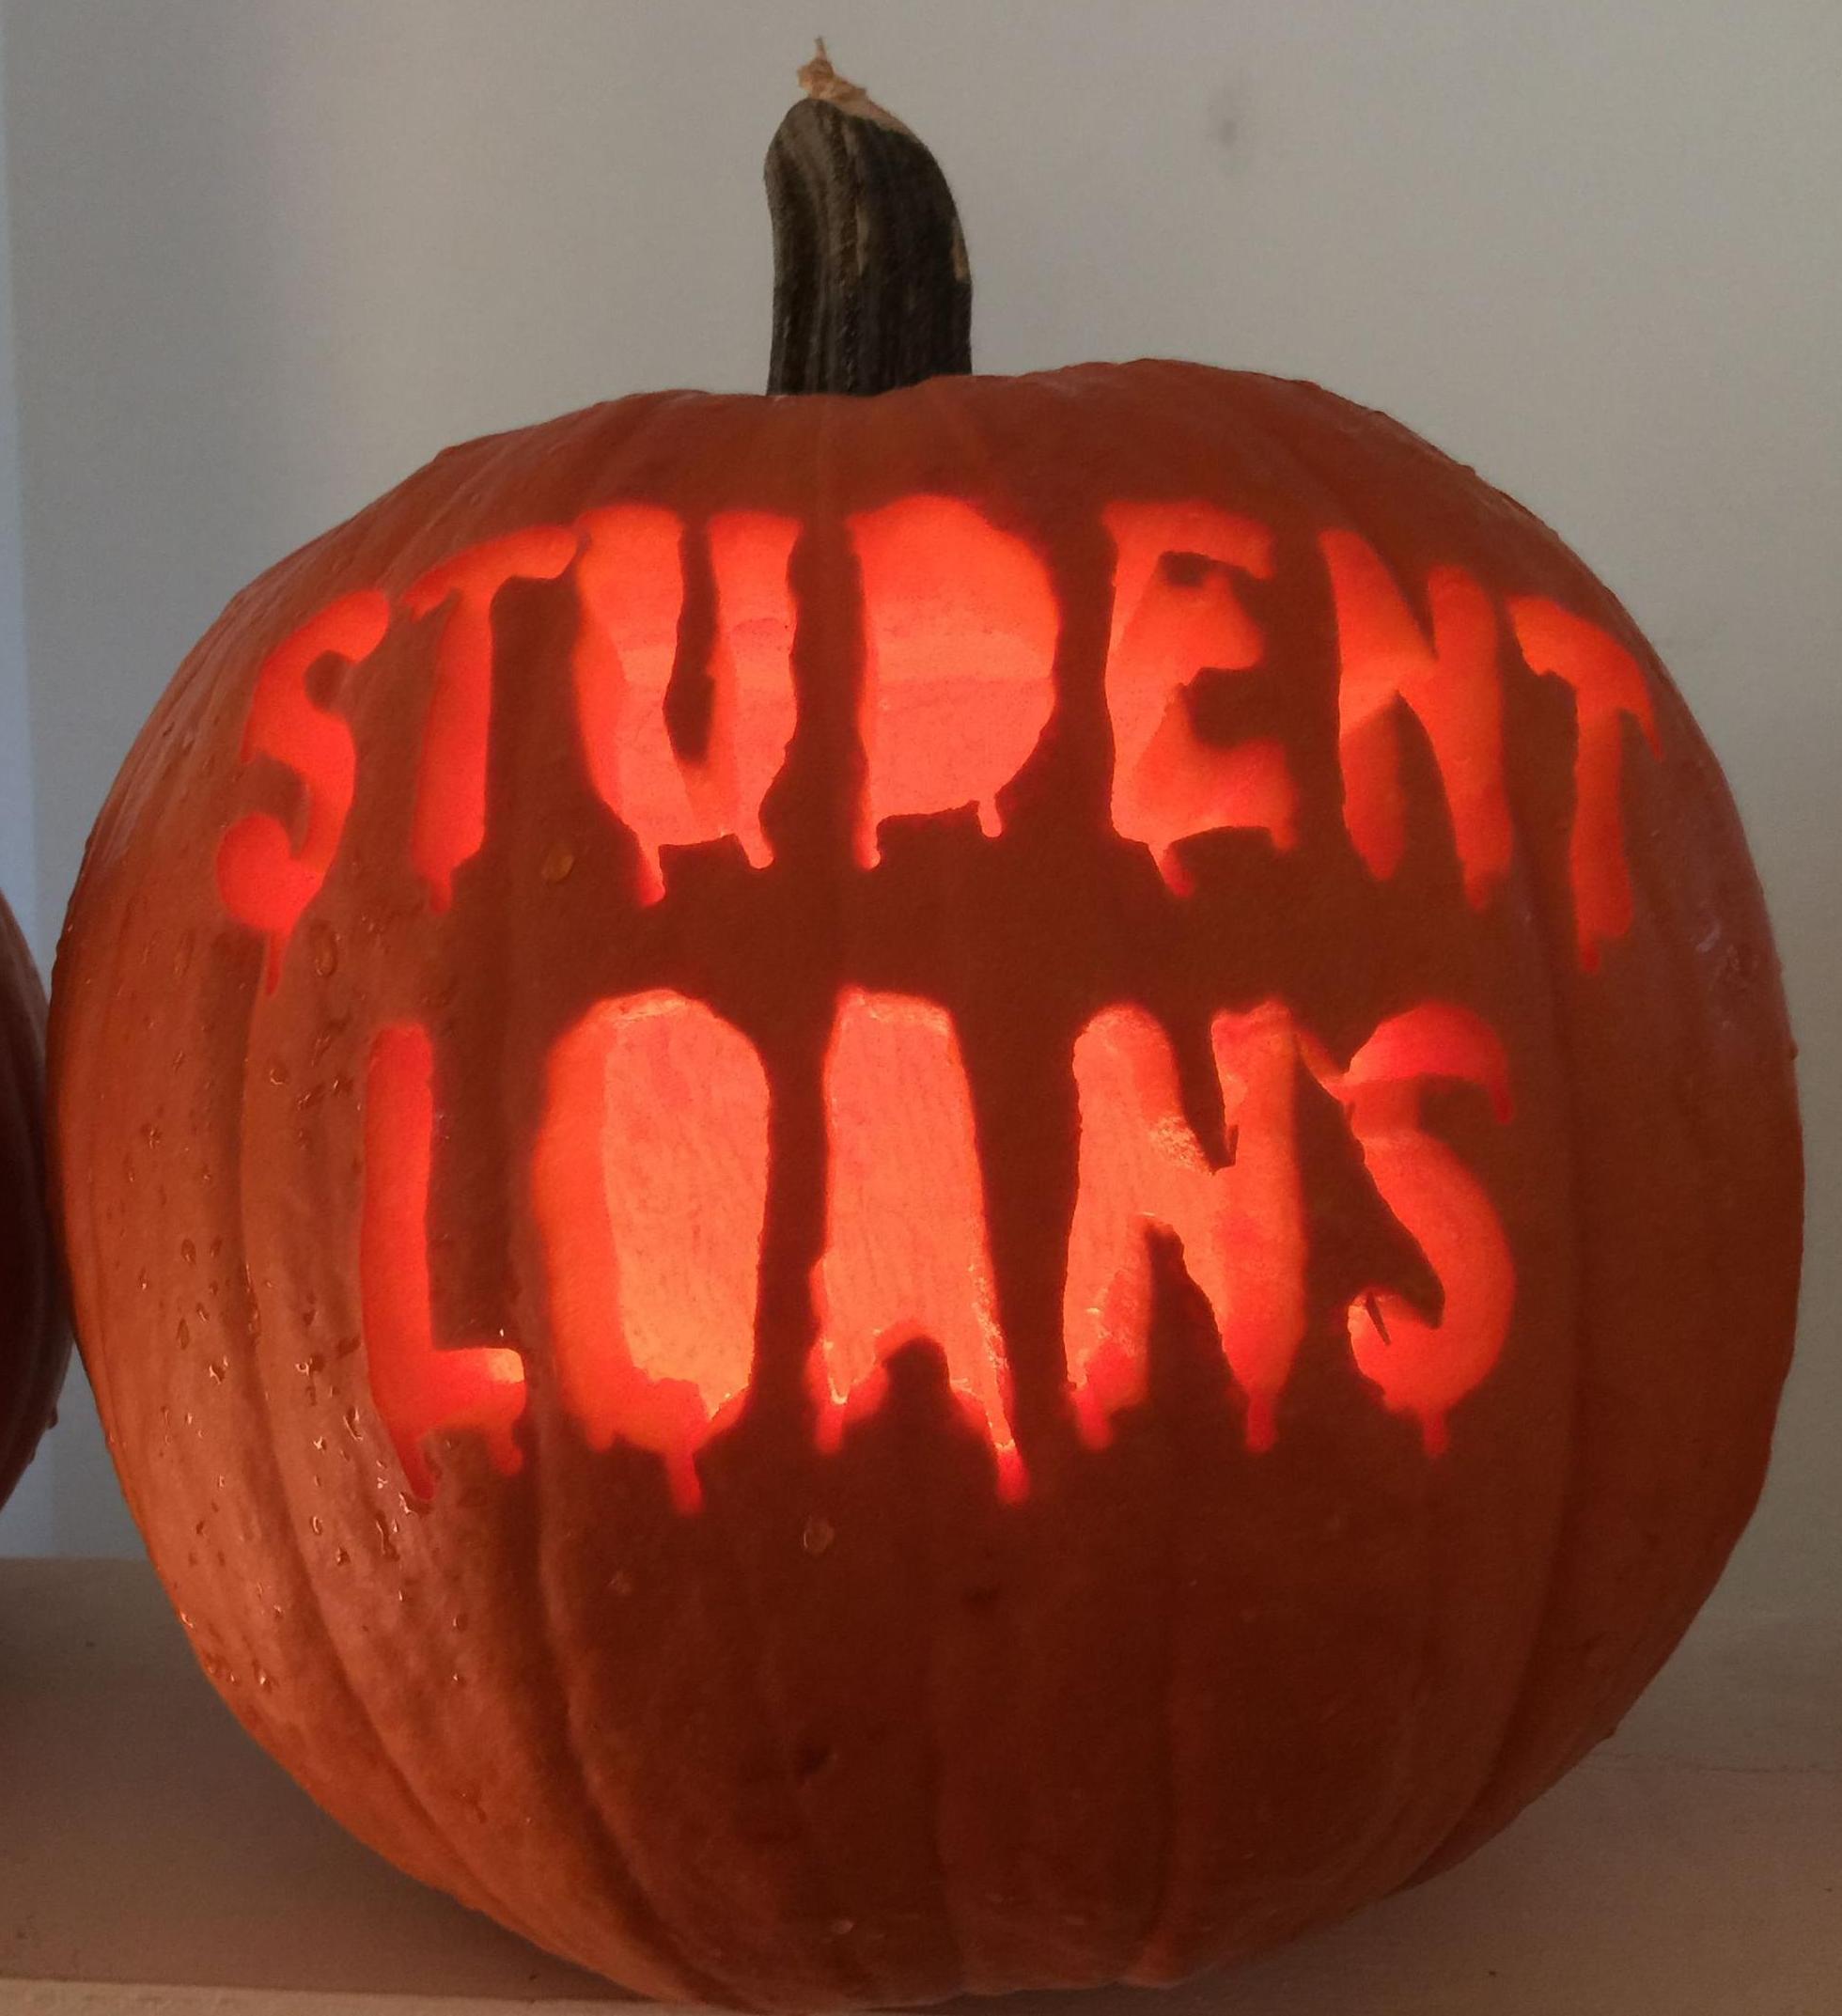 student-loans-pumpkin